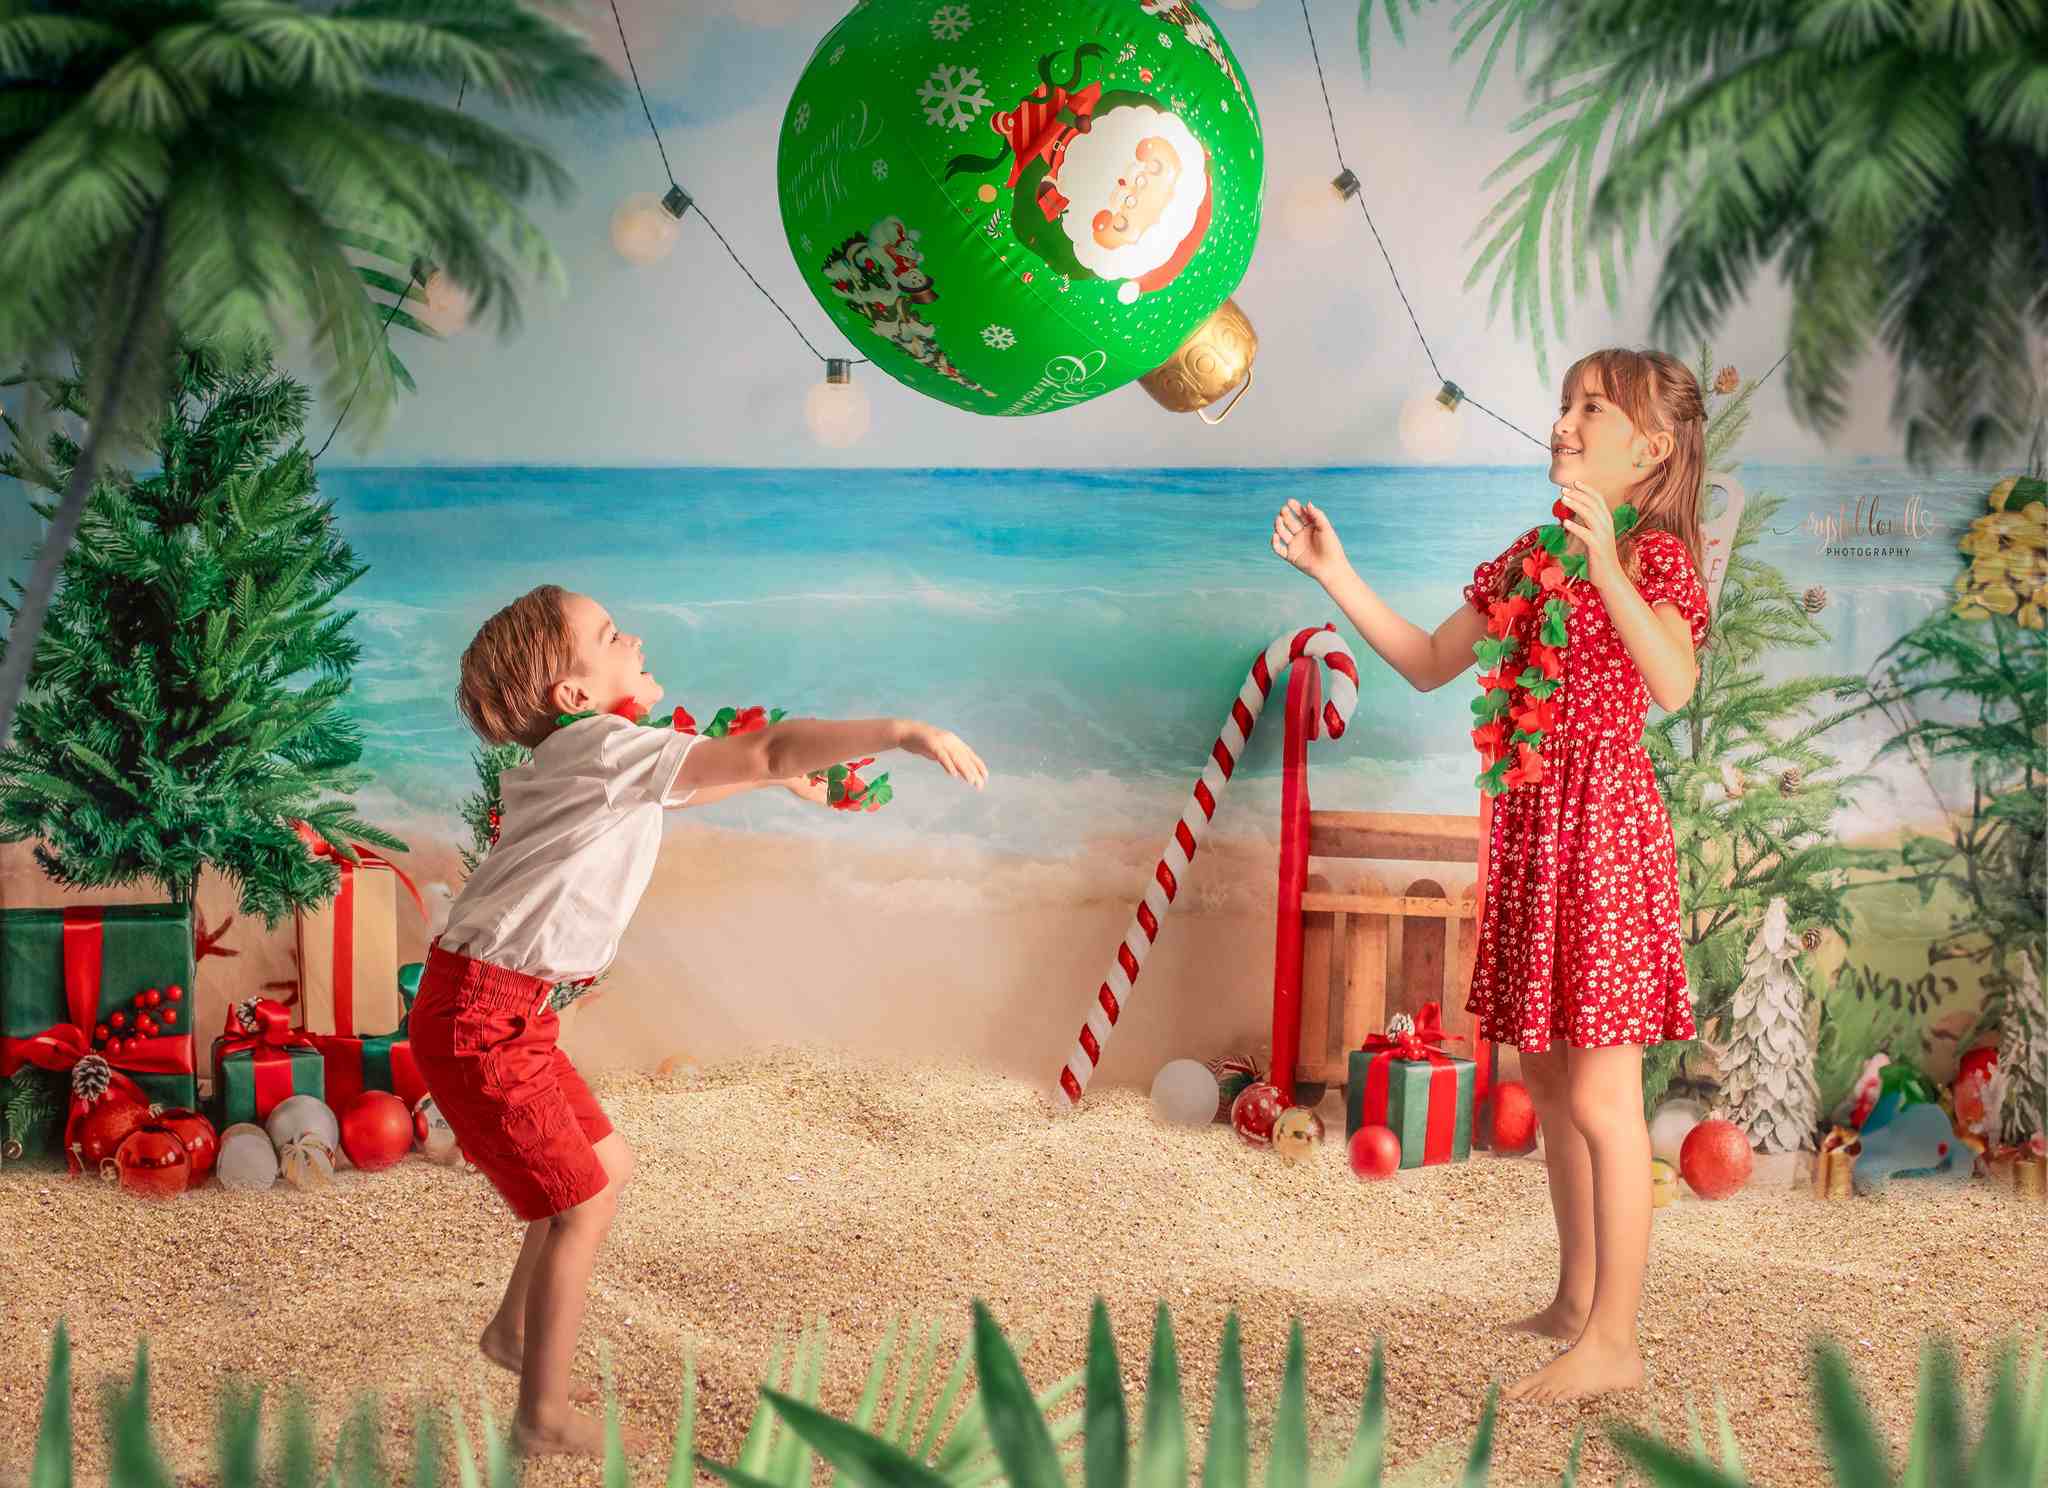 Kate Weihnachten im Sommer Strand Geschenke Hintergrund von Emetselch